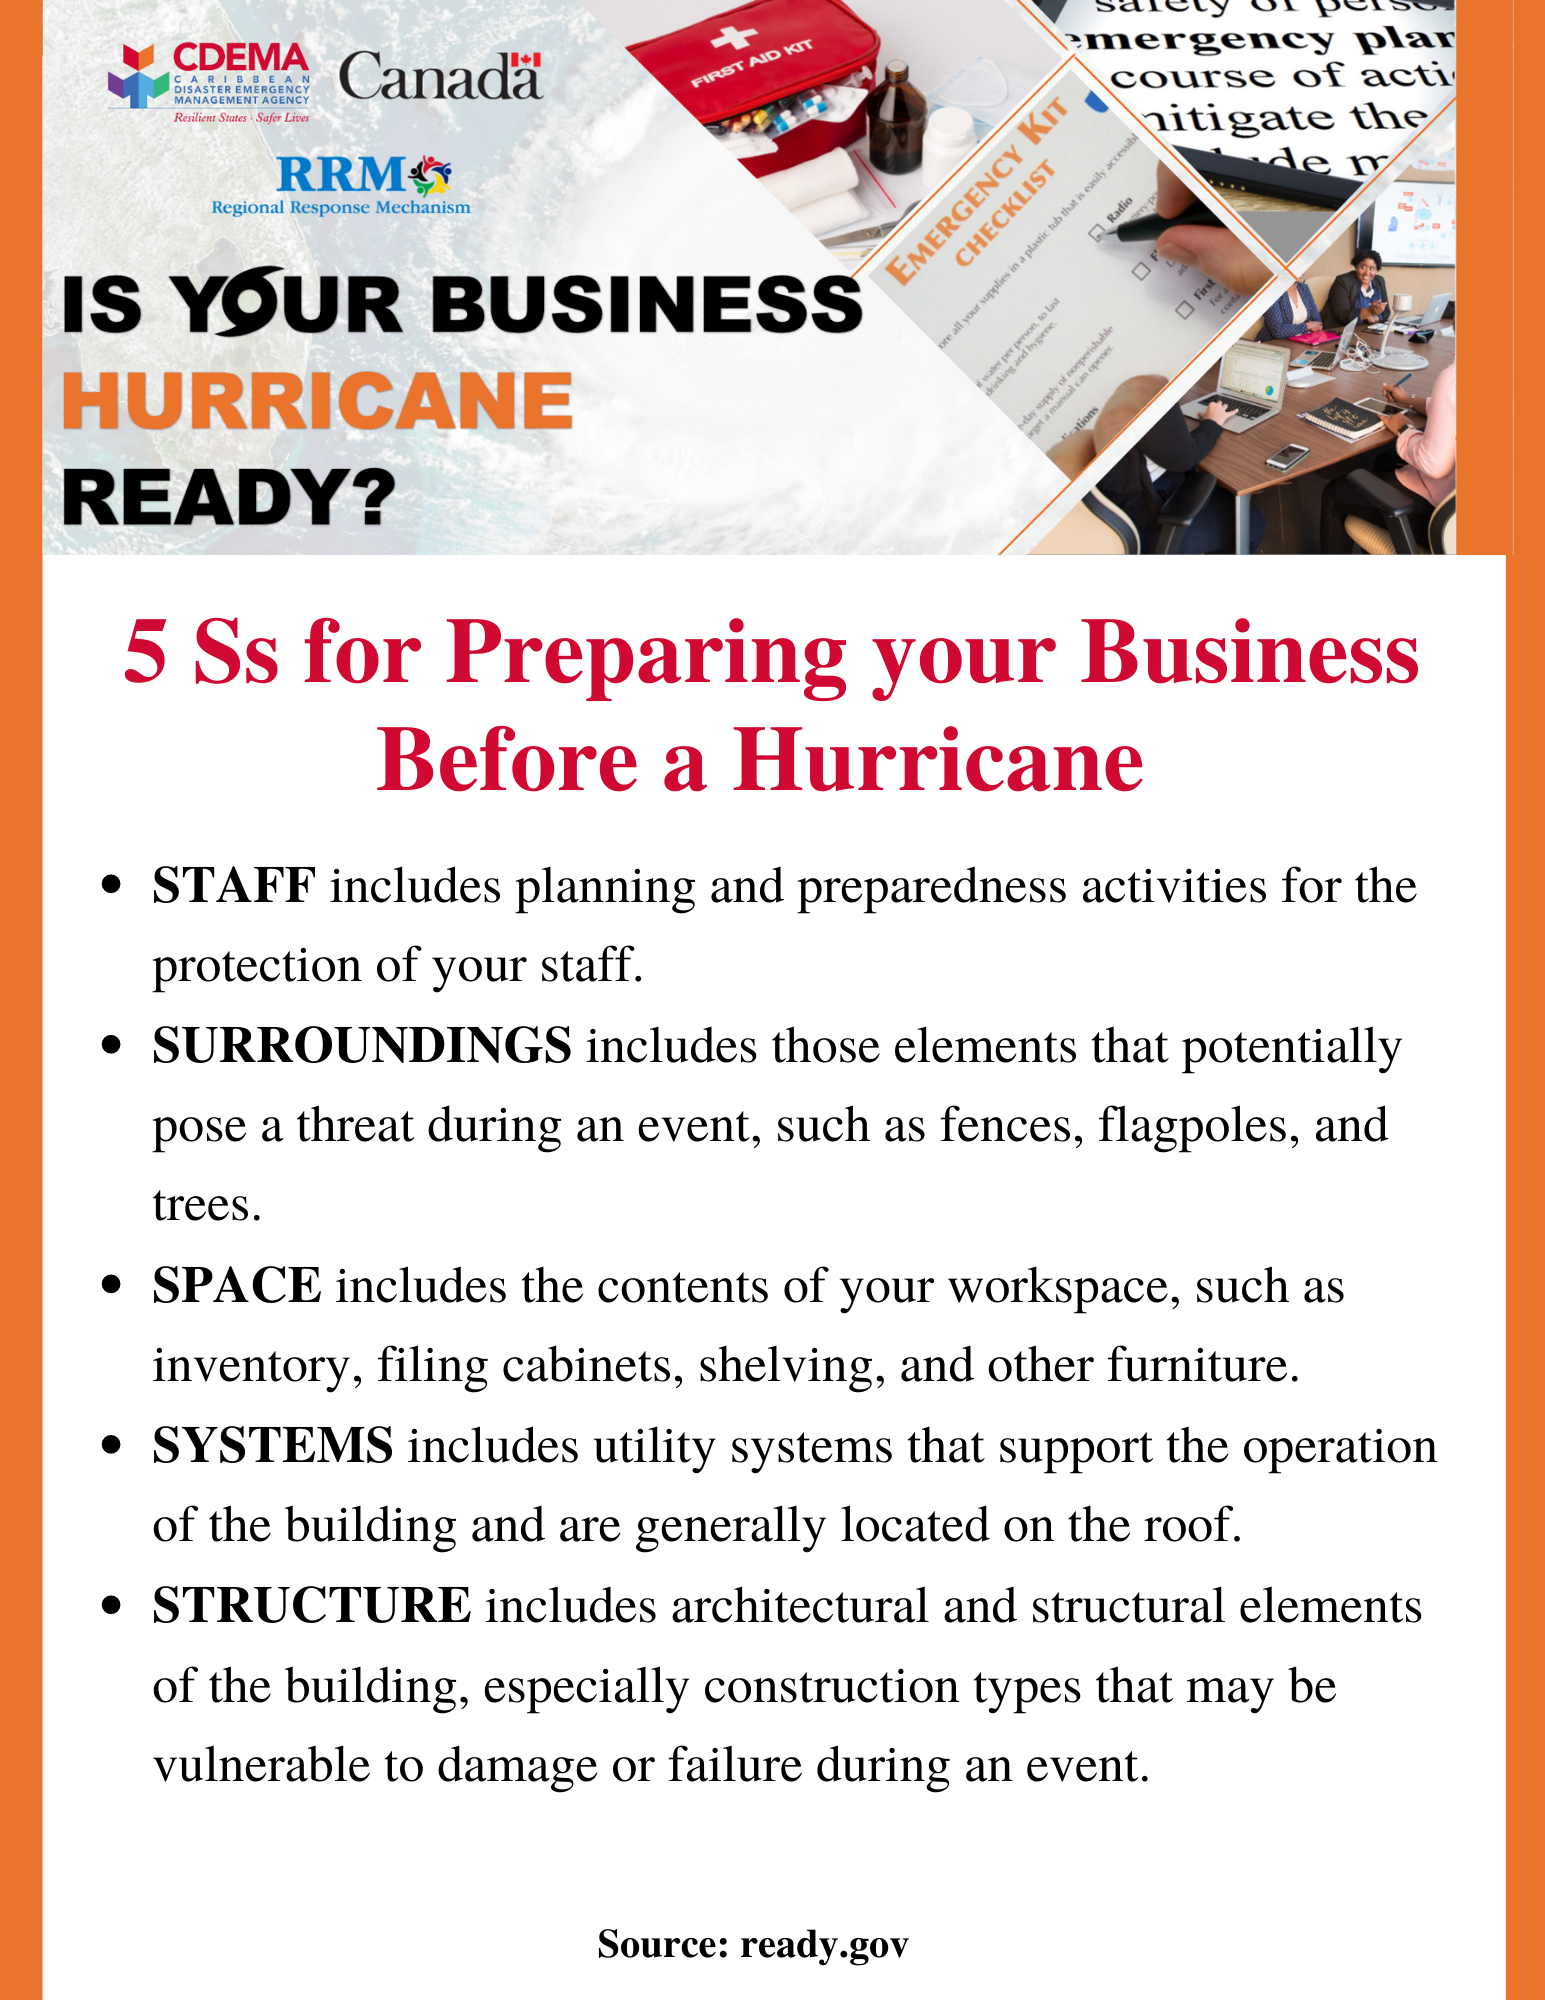 Hurricane Preparedness Tips for Businesses CDEMA